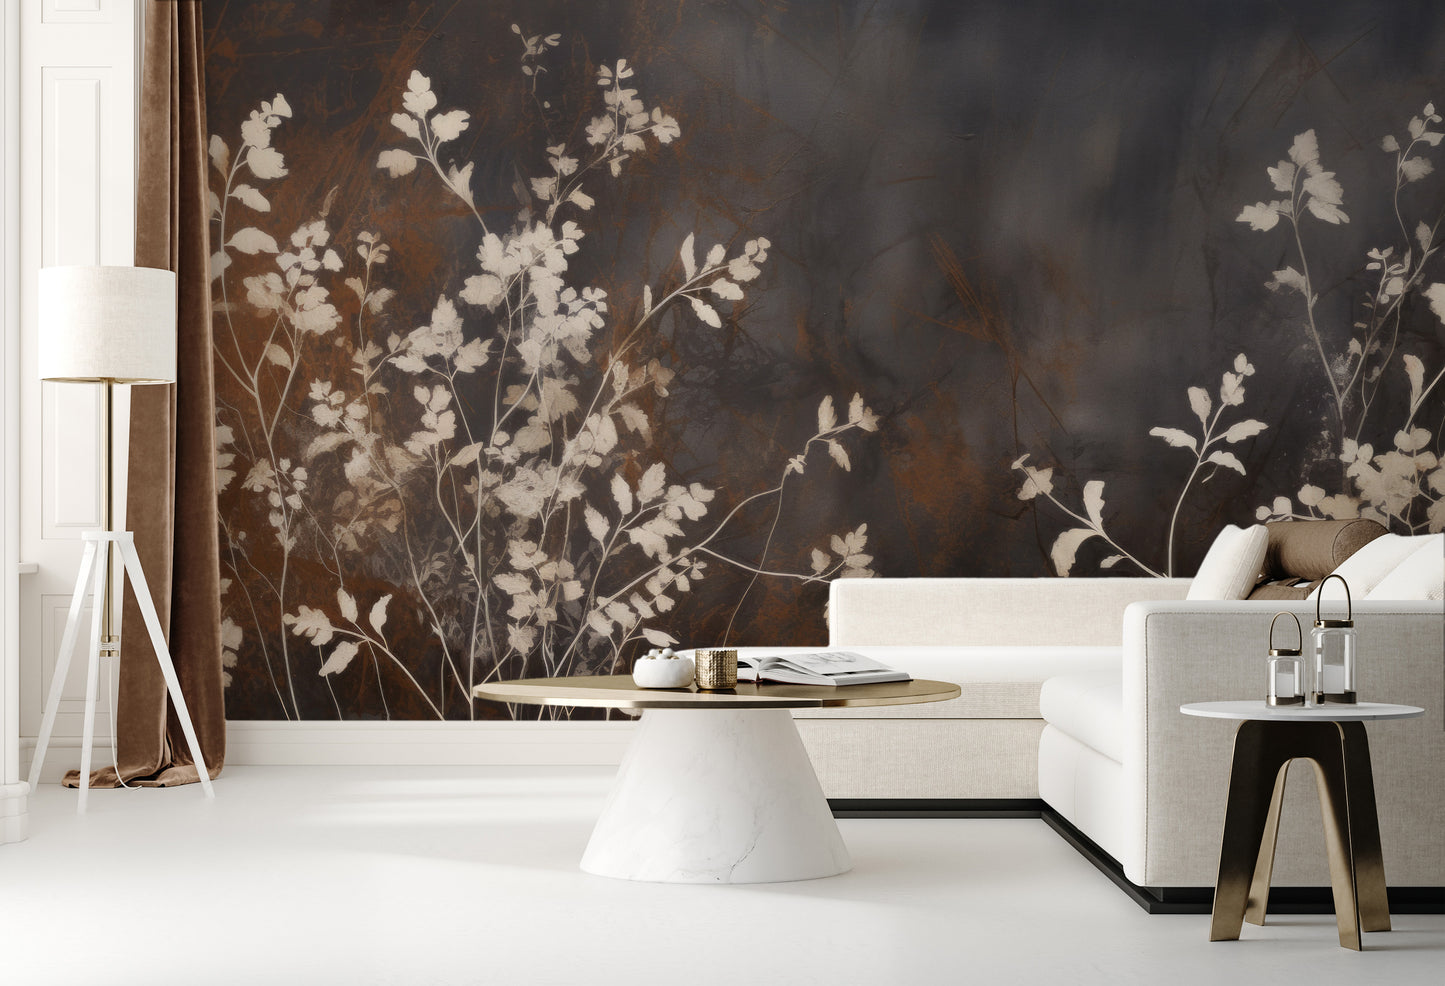 Fototapeta artystyczna o nazwie Elegant Shadow Flora pokazana w aranżacji wnętrza.